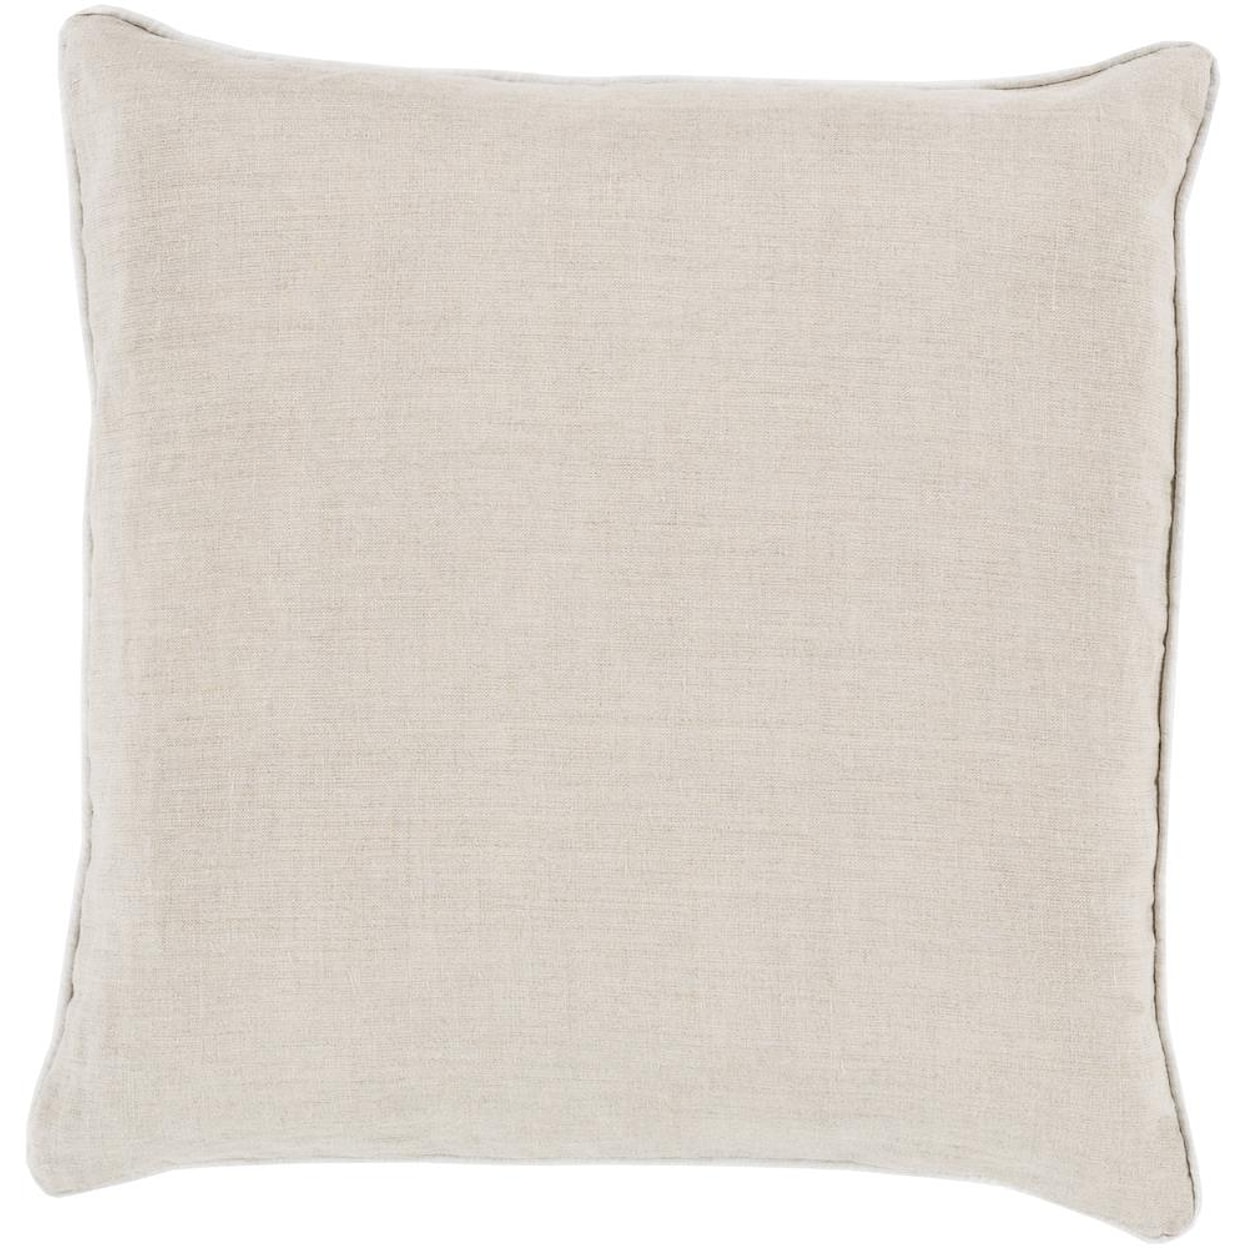 Surya Pillows 20" x 20" Linen Piped Pillow